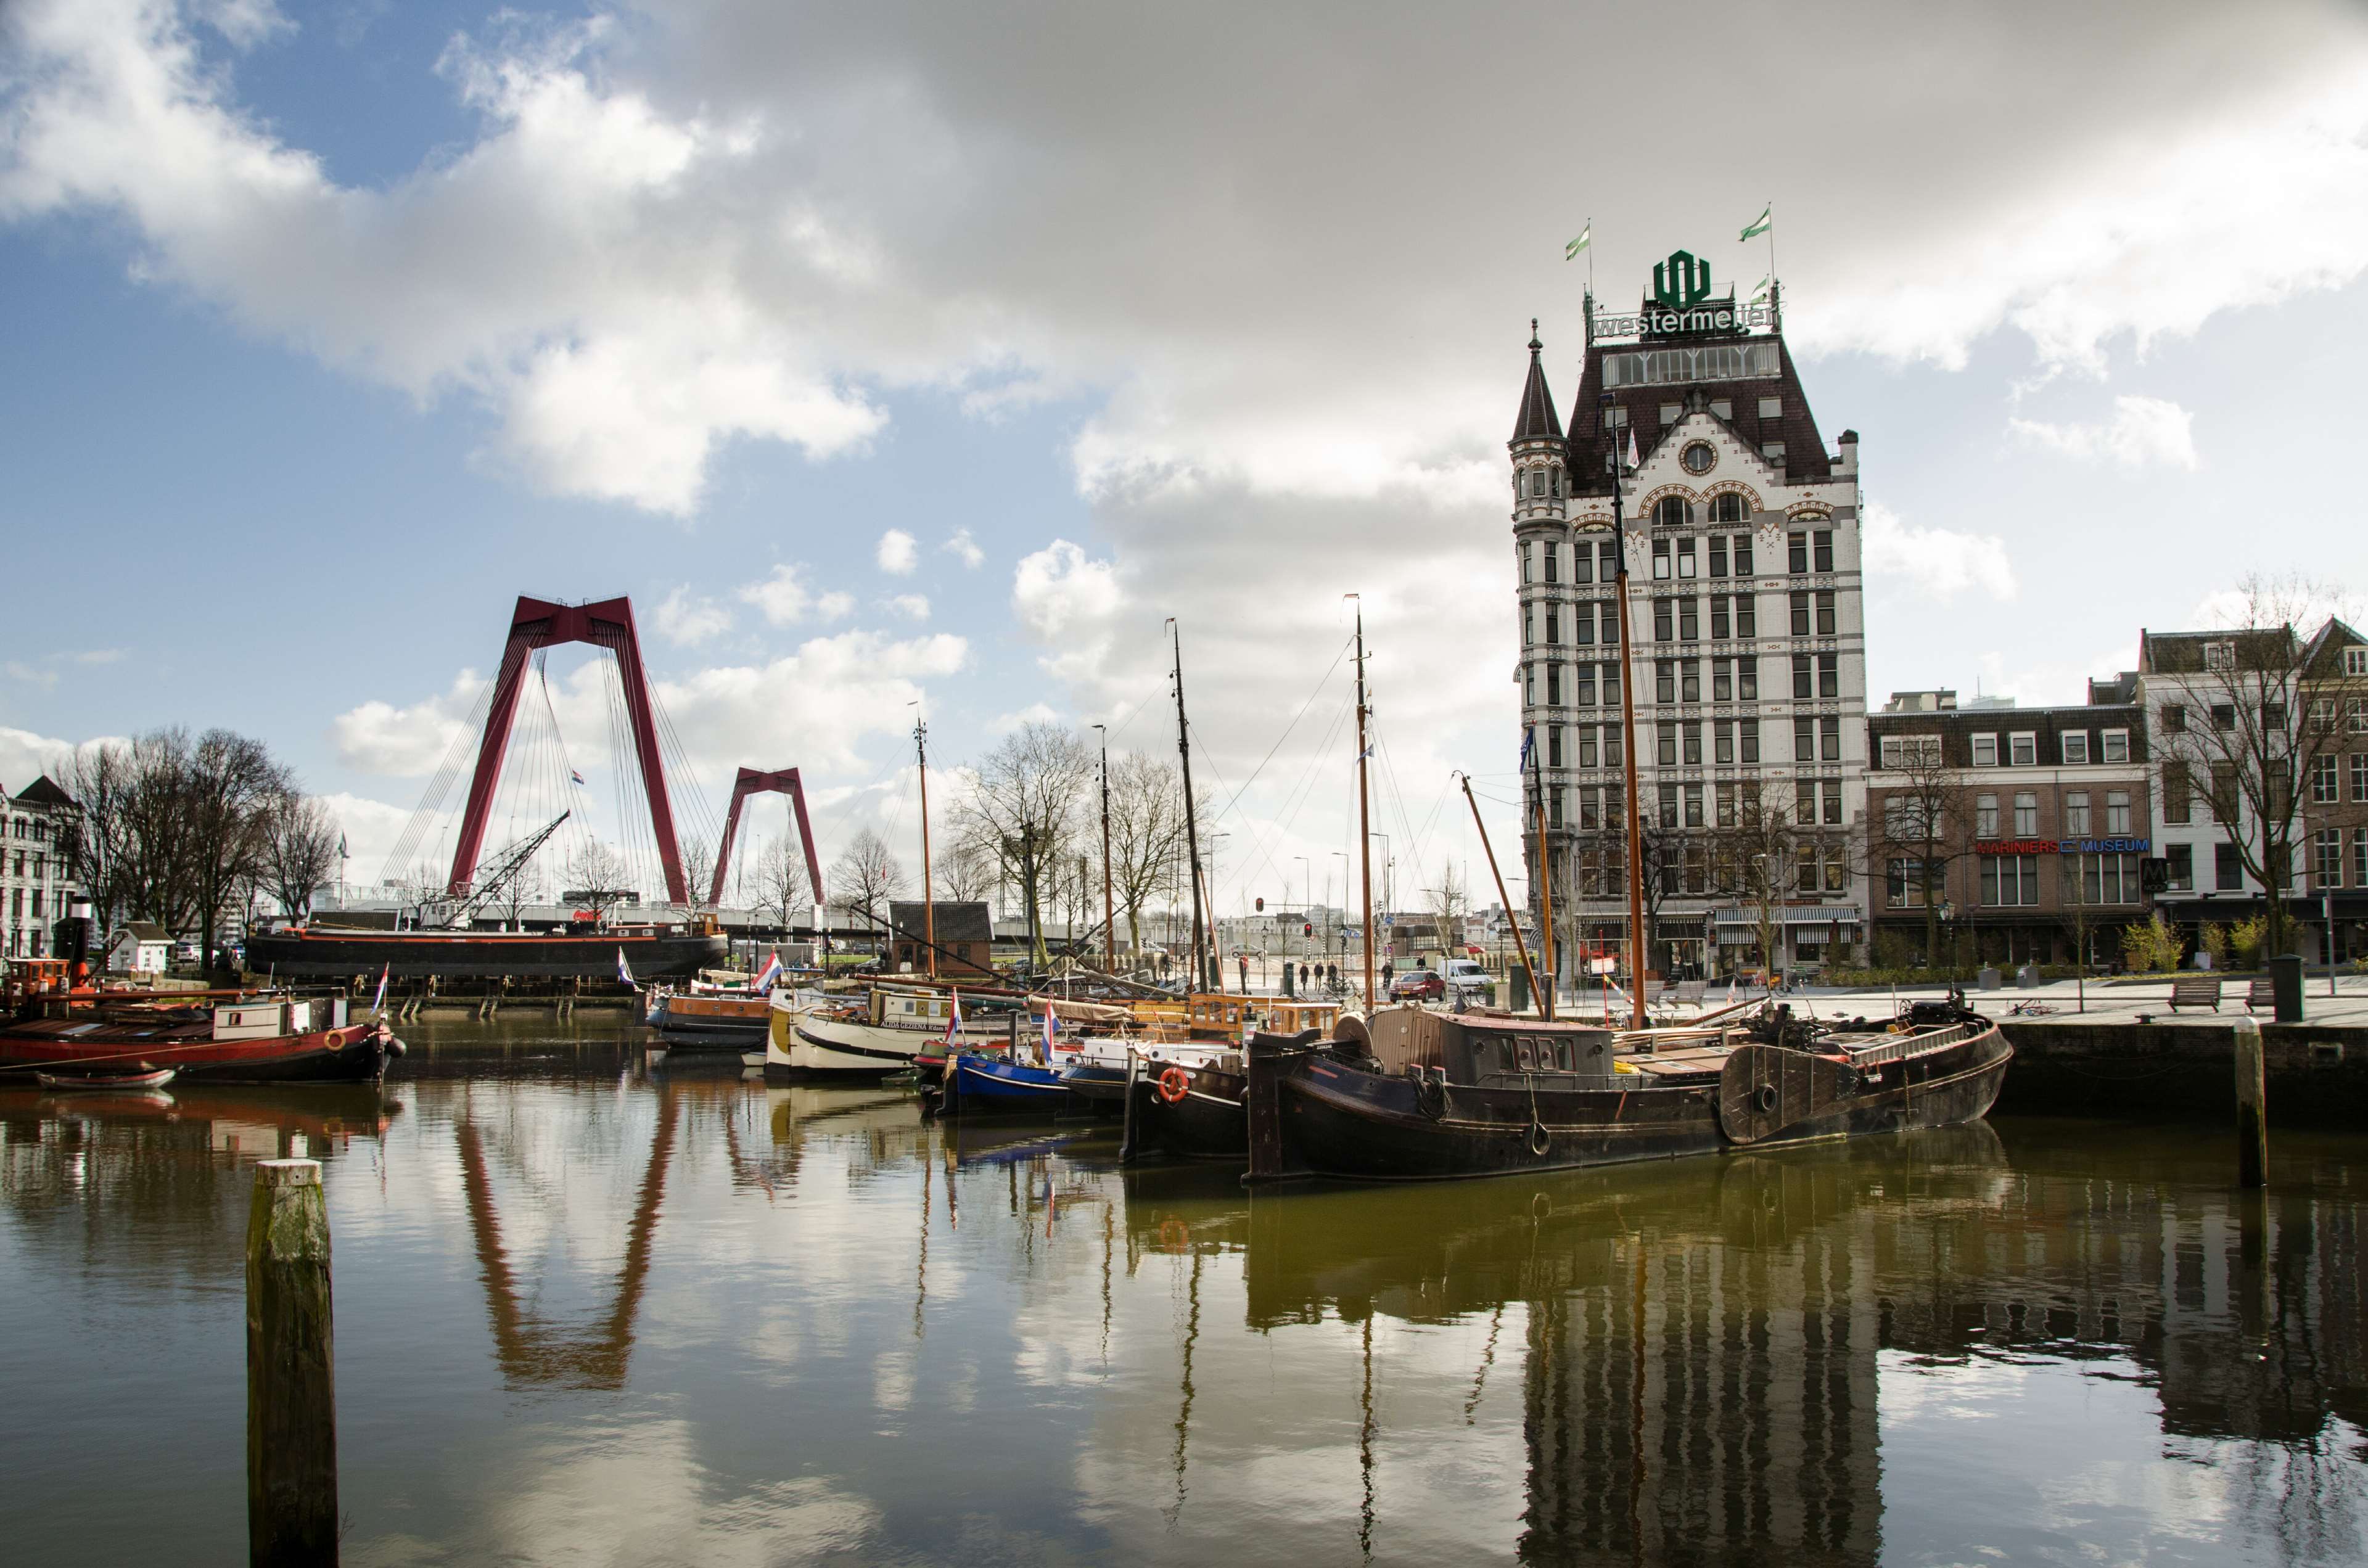 Bridge, Cc0, Harbor, Public Domain, Reflection, Rotterdam, - S6 Edge Capture , HD Wallpaper & Backgrounds